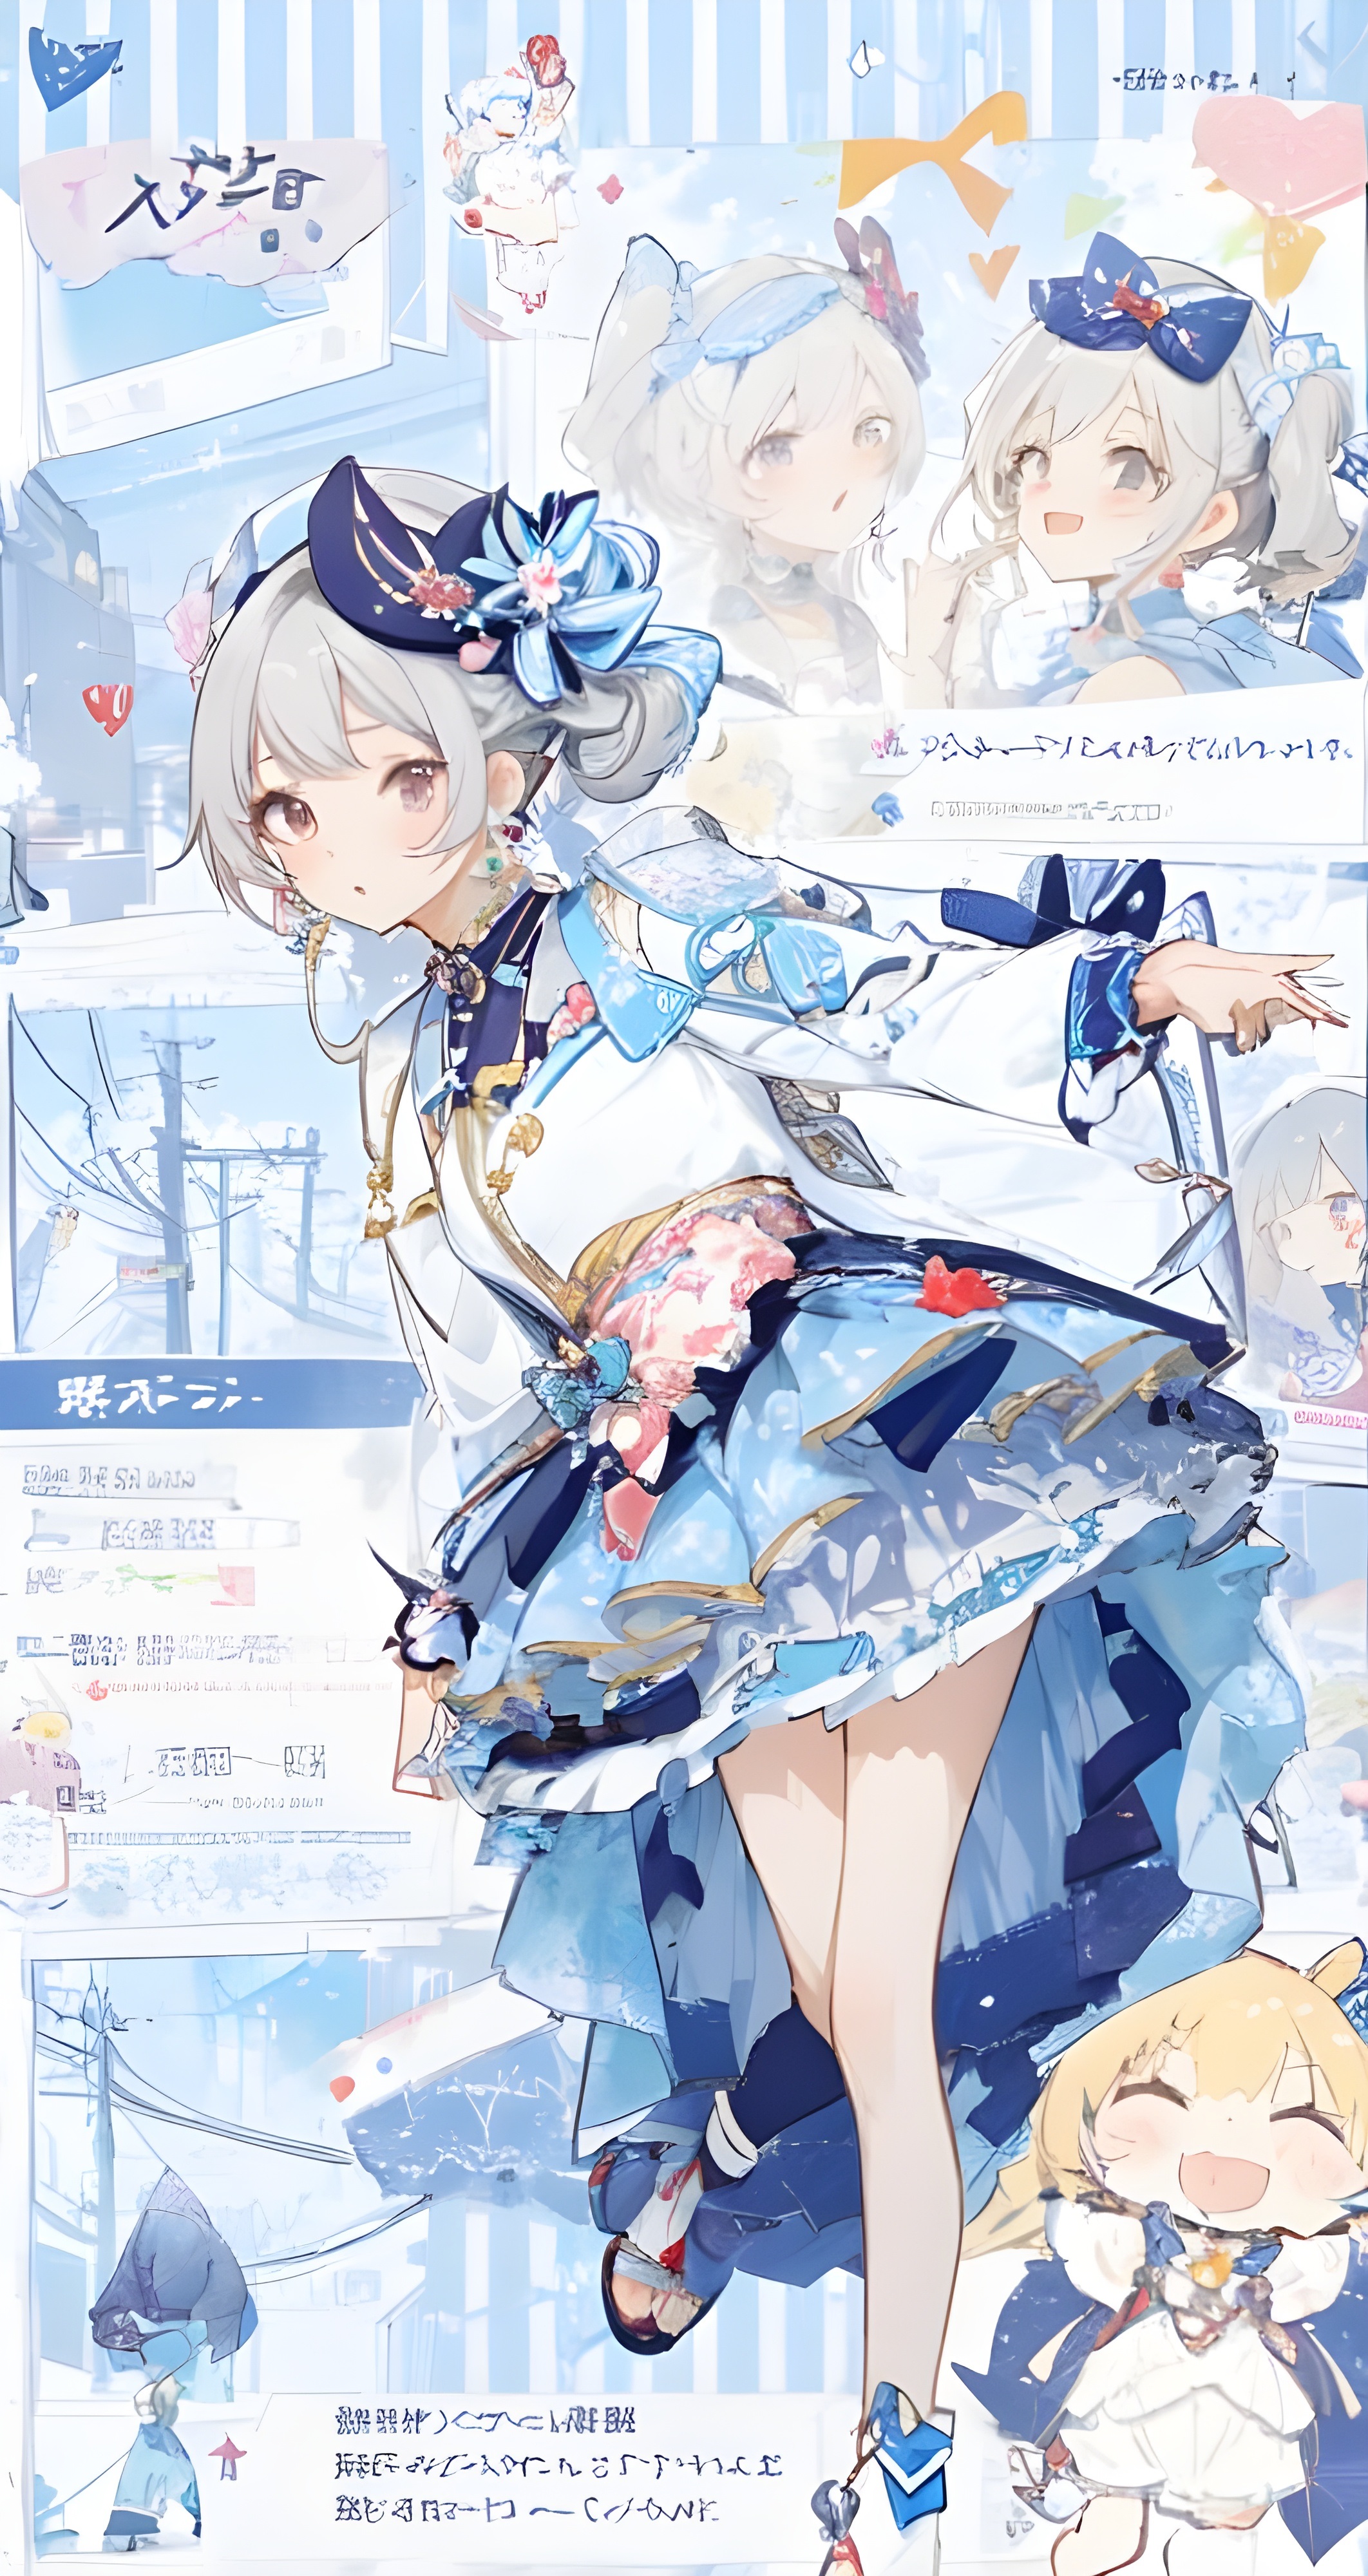 Anime Wallpaper Cute Girl